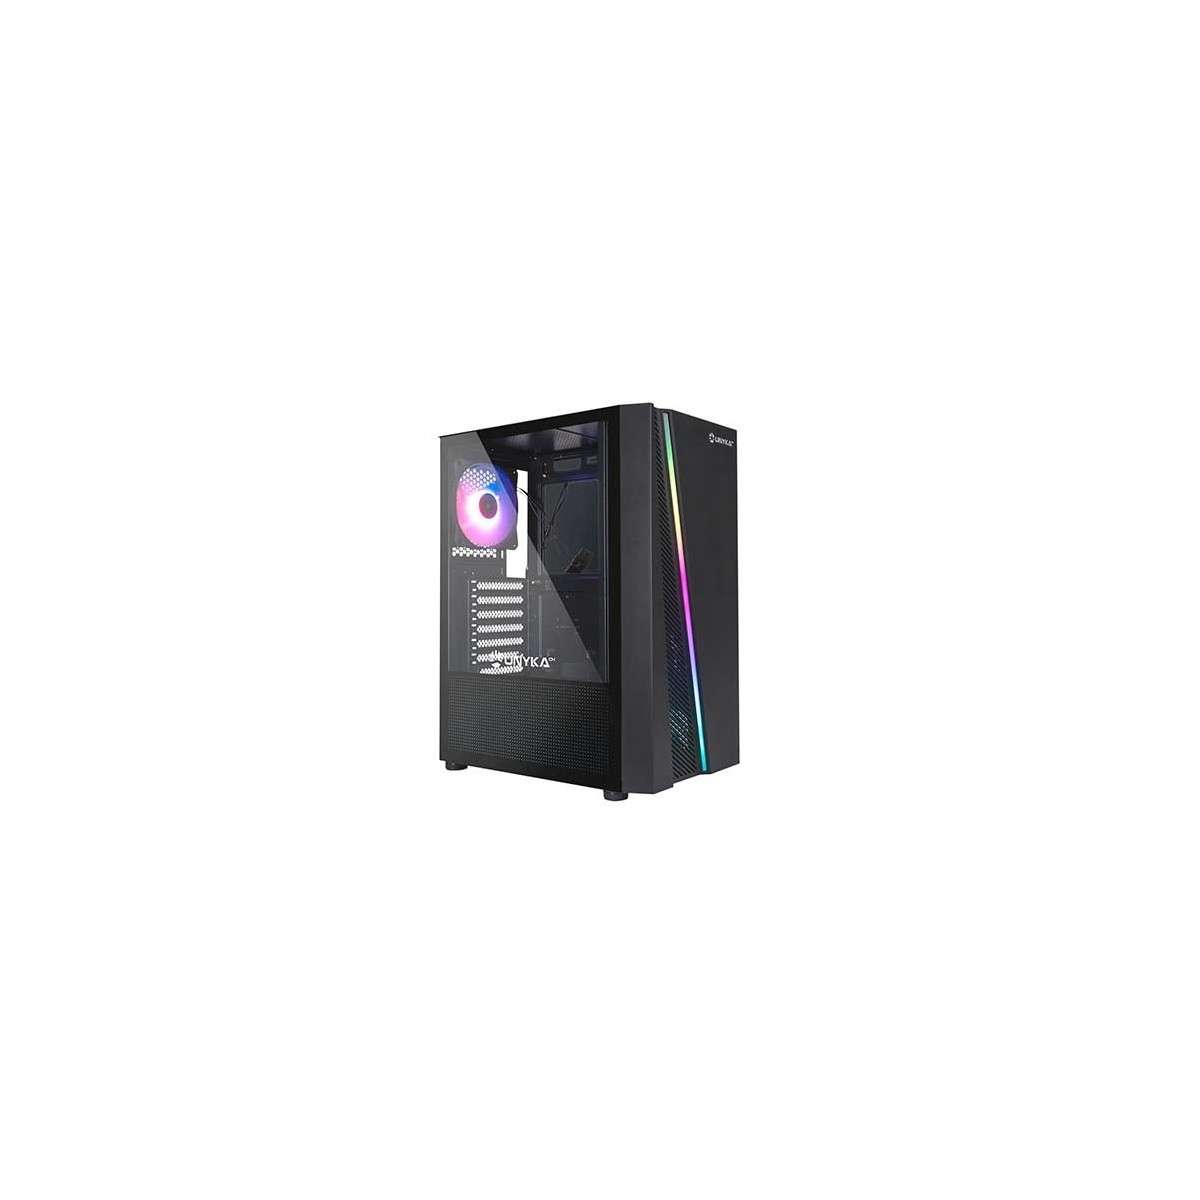 UNYKAch Glayze Caja PC ATX Blanca RGB Cristal Templado USB 3.0